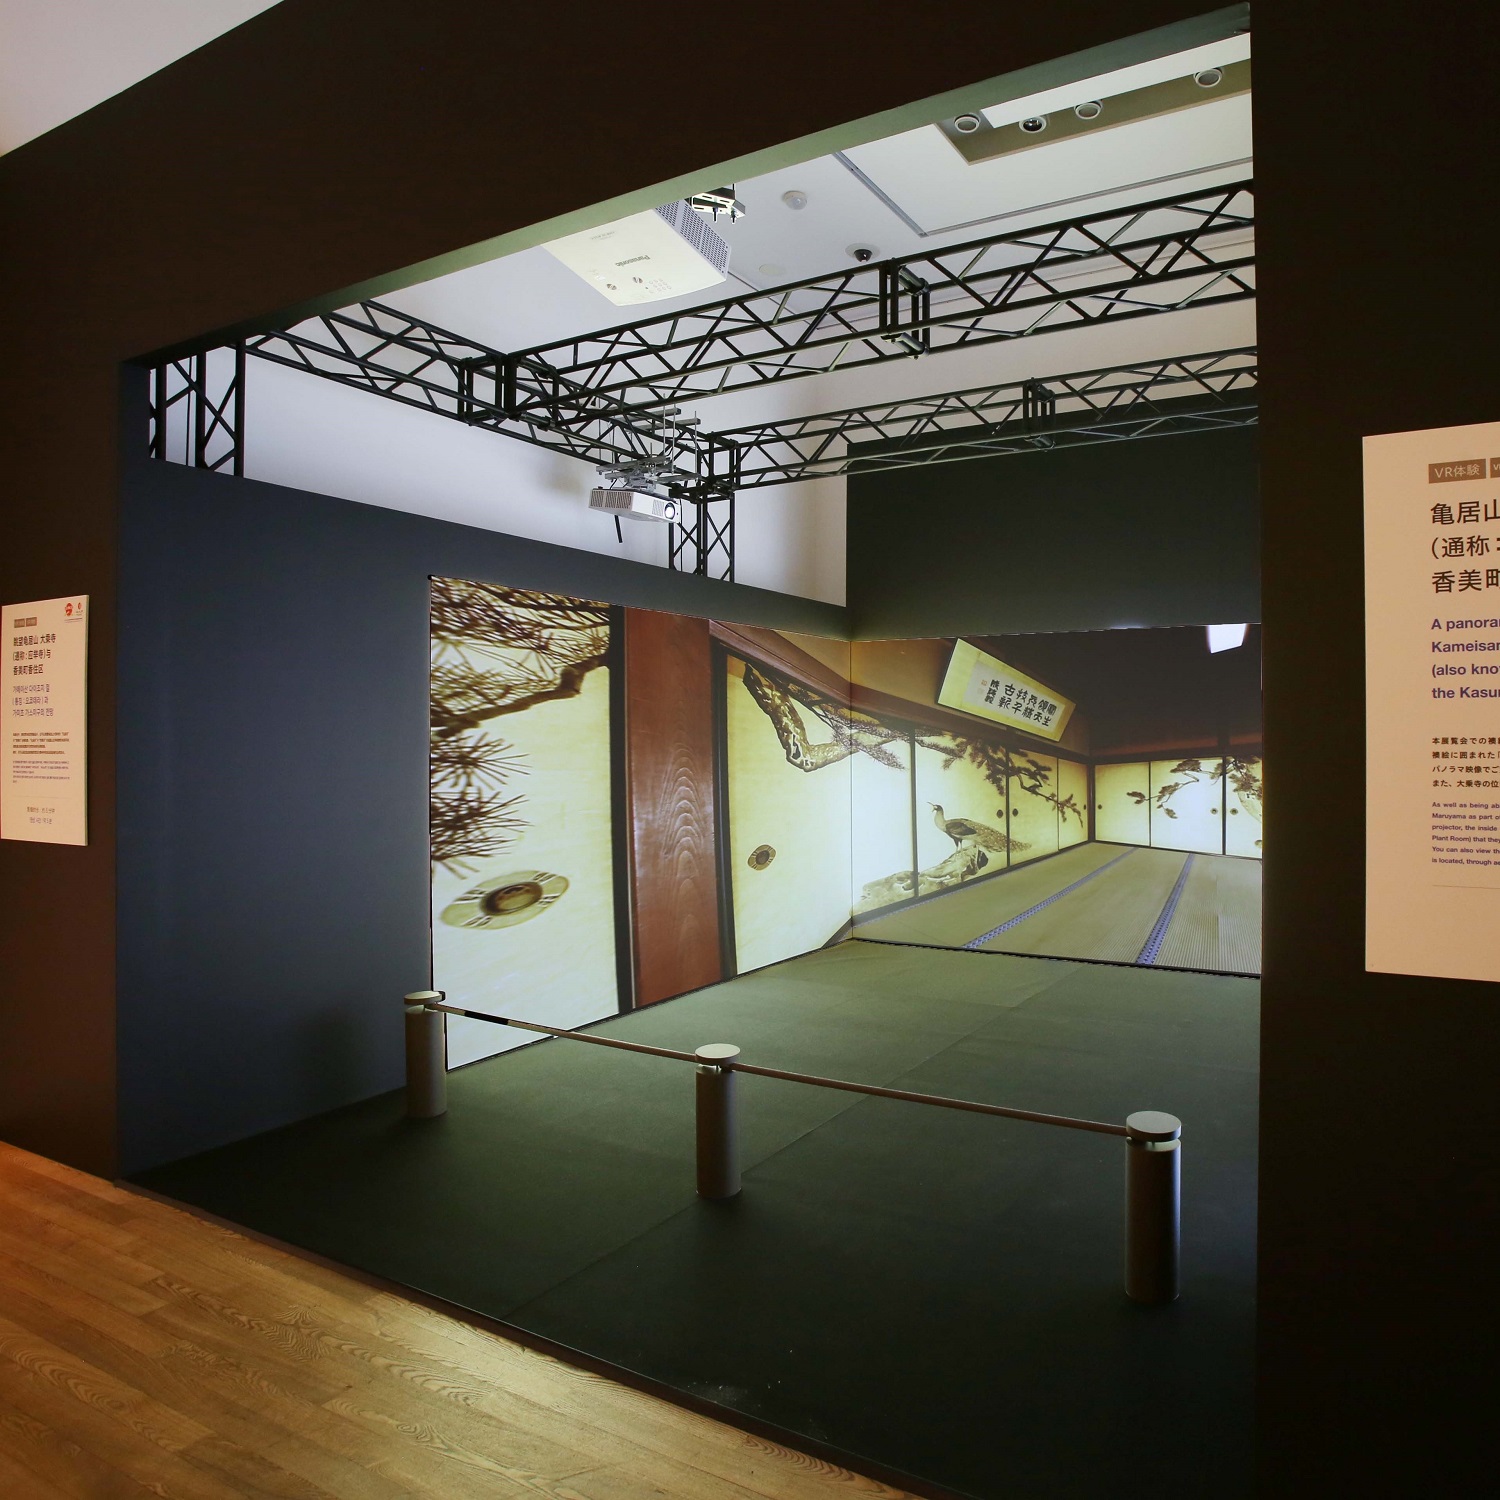 企画展「円山応挙から近代京都画壇へ」にて、VRコンテンツを制作しプロジェクション投影で空間再現